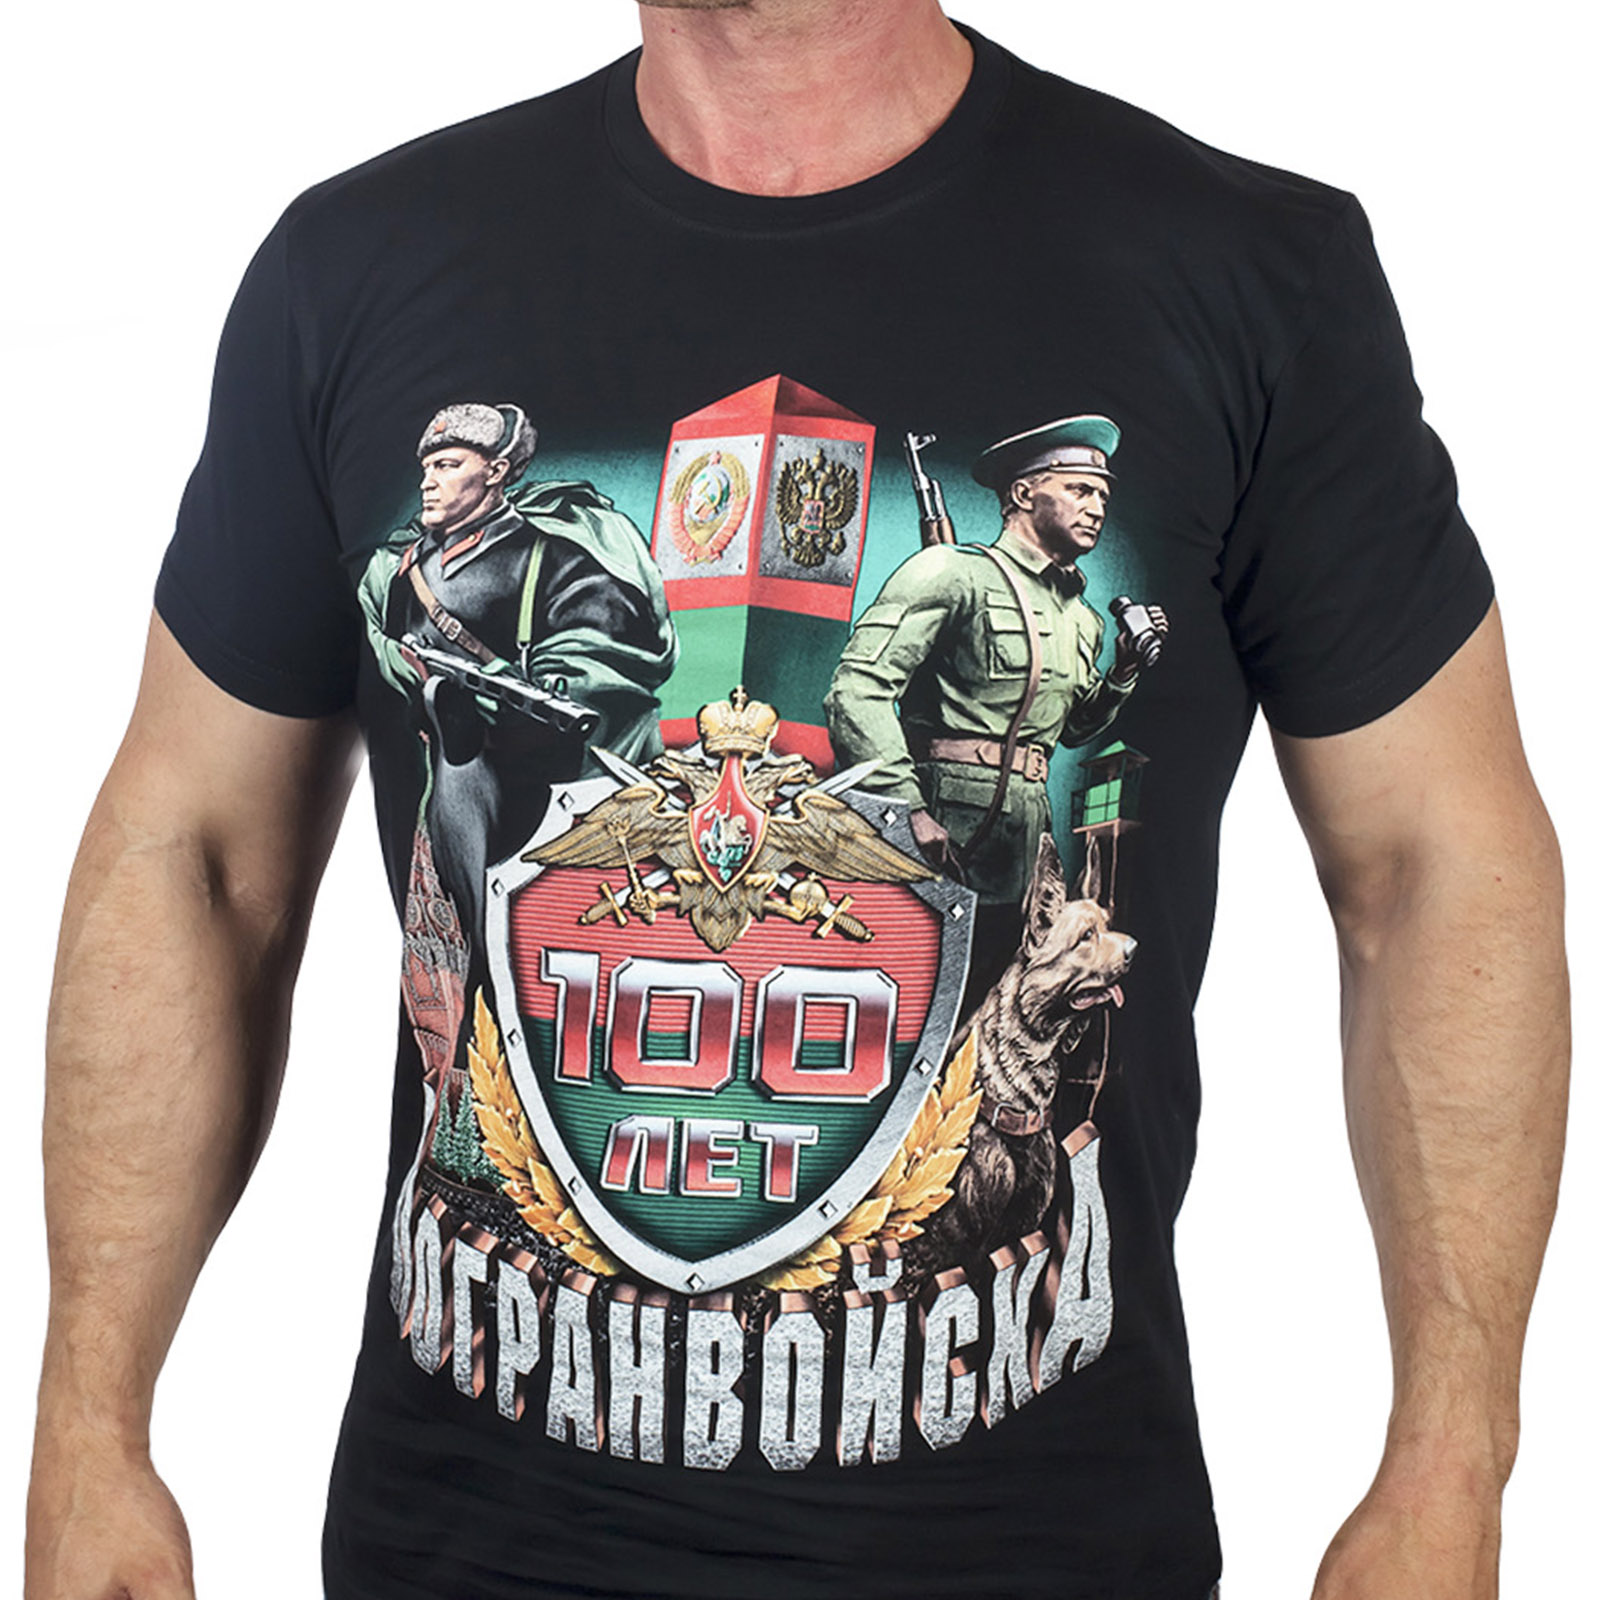 Недорогая мужская футболка-подарок в честь Юбилея Погранвойск